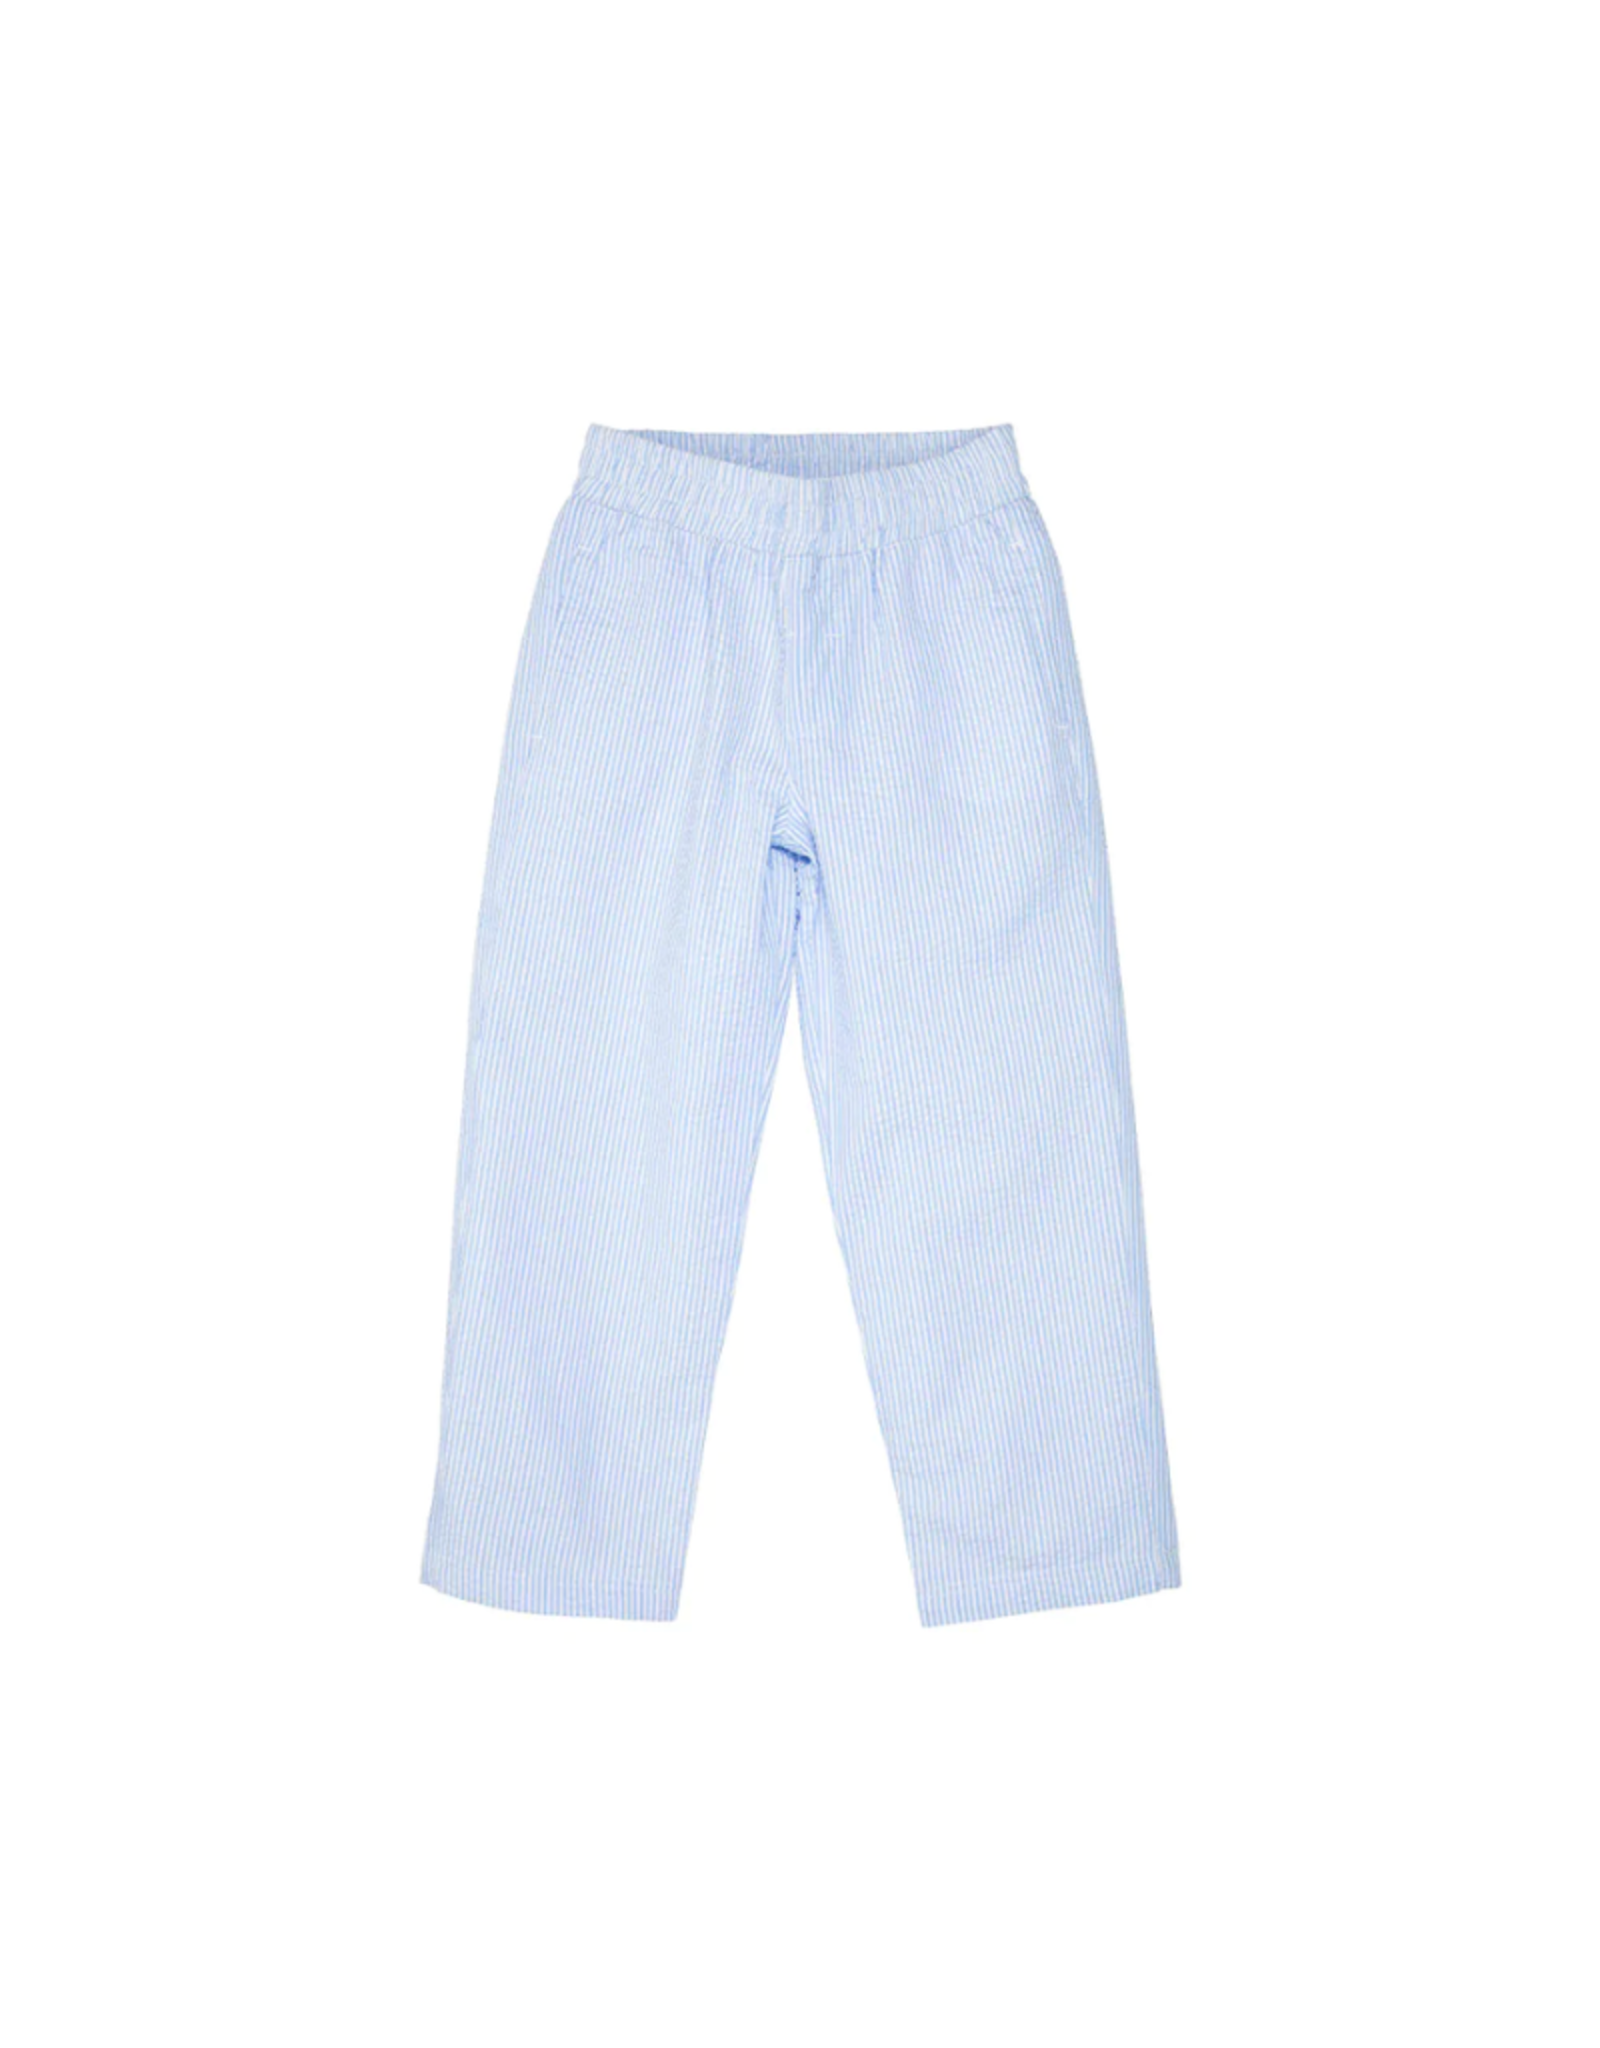 The Beaufort Bonnet Company Sheffield Pants, Breakers Blue Seersucker